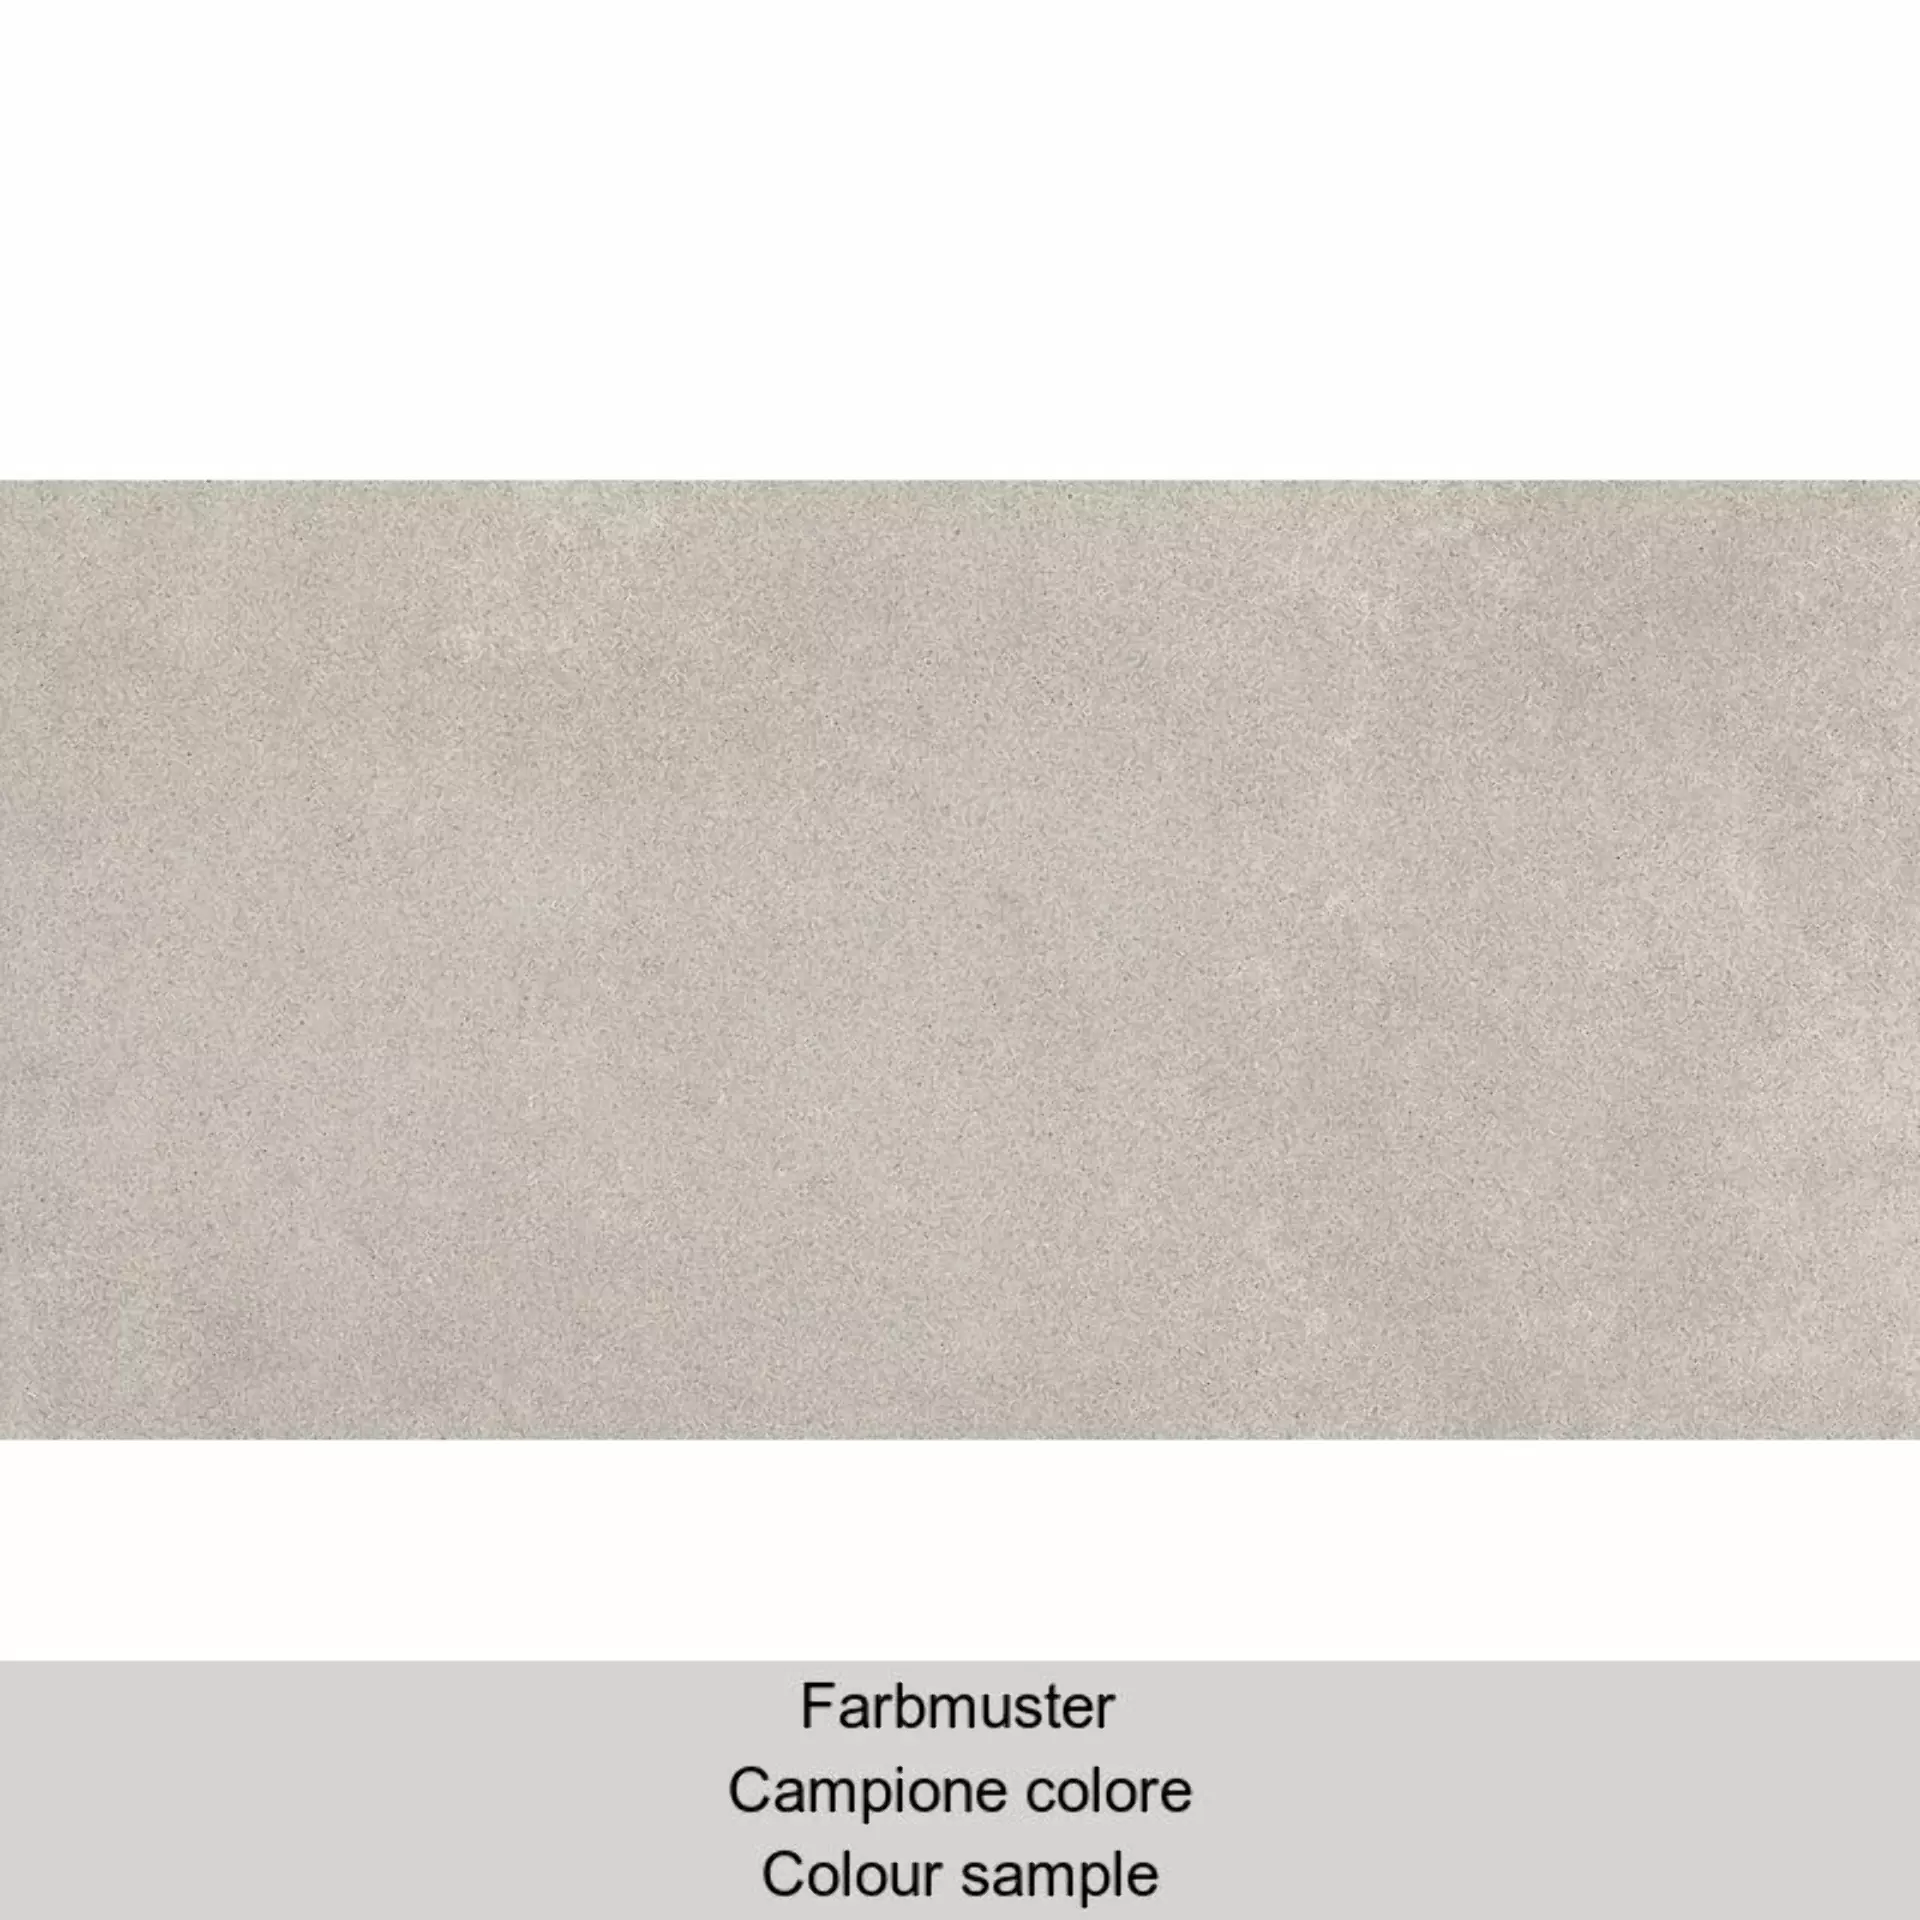 Casalgrande Pietre Etrusche Paestum Naturale – Matt – Antibacterial 7795787 30x60cm rectified 9mm